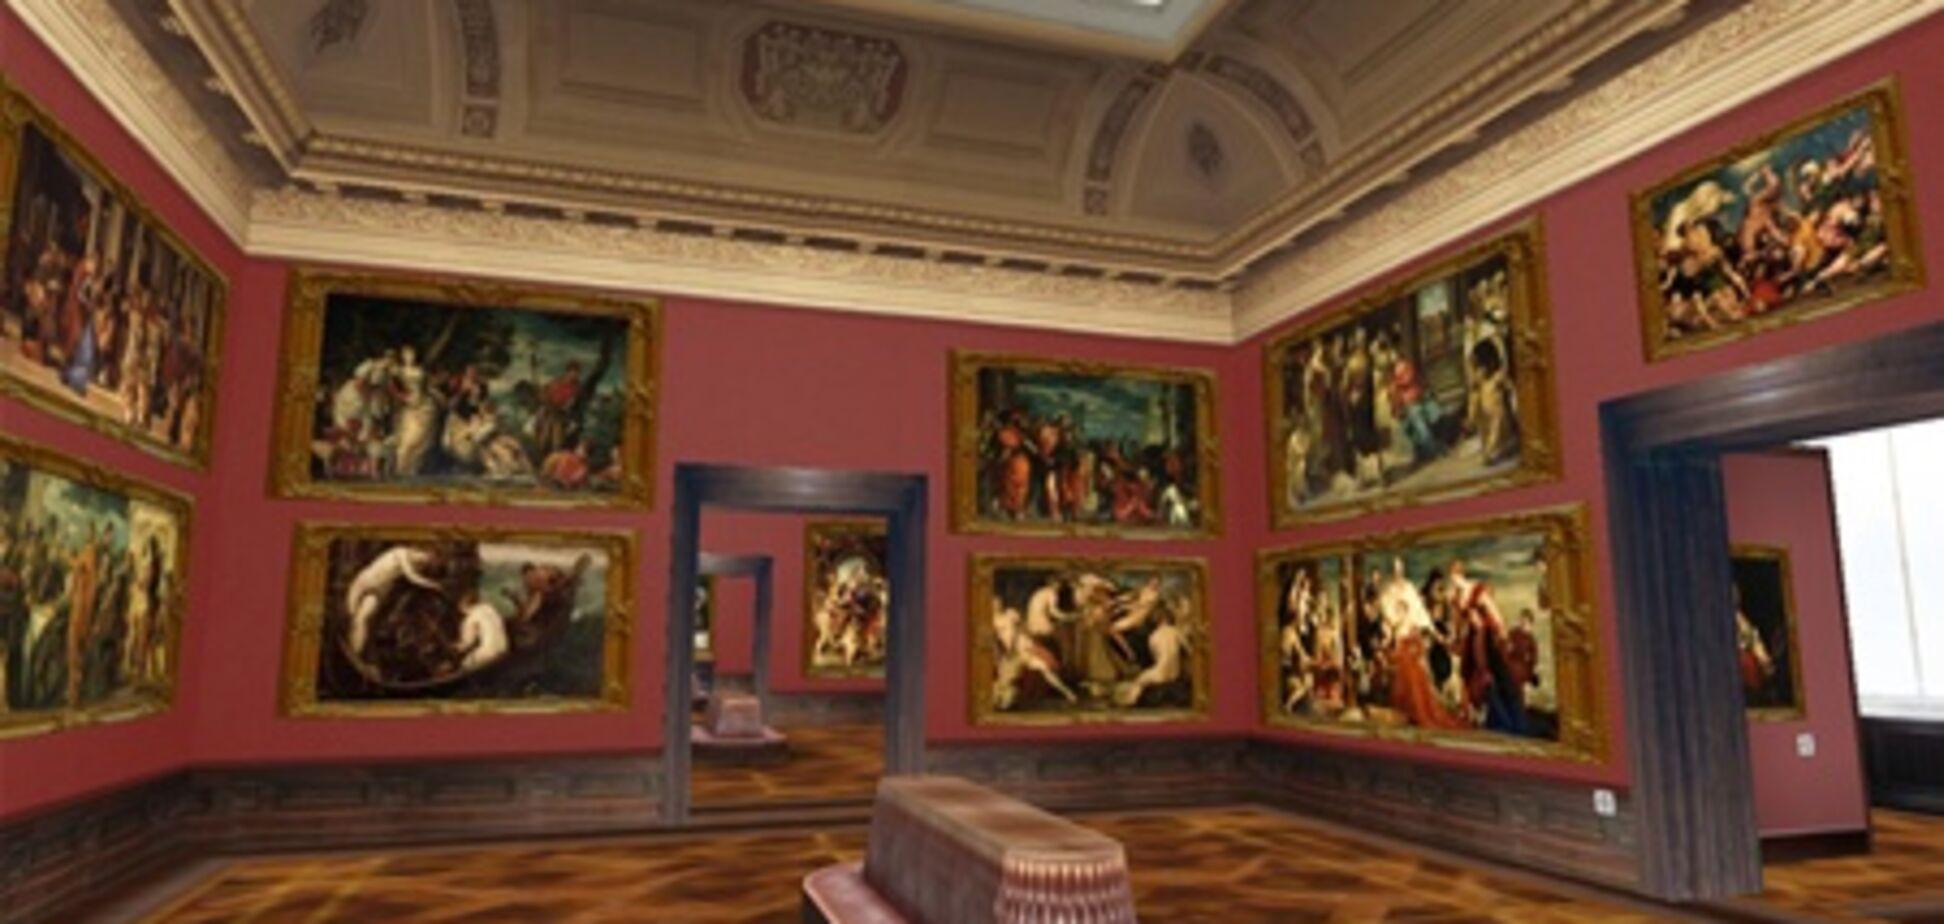 Галерея старых мастеров в Дрездене открывается после реконструкции